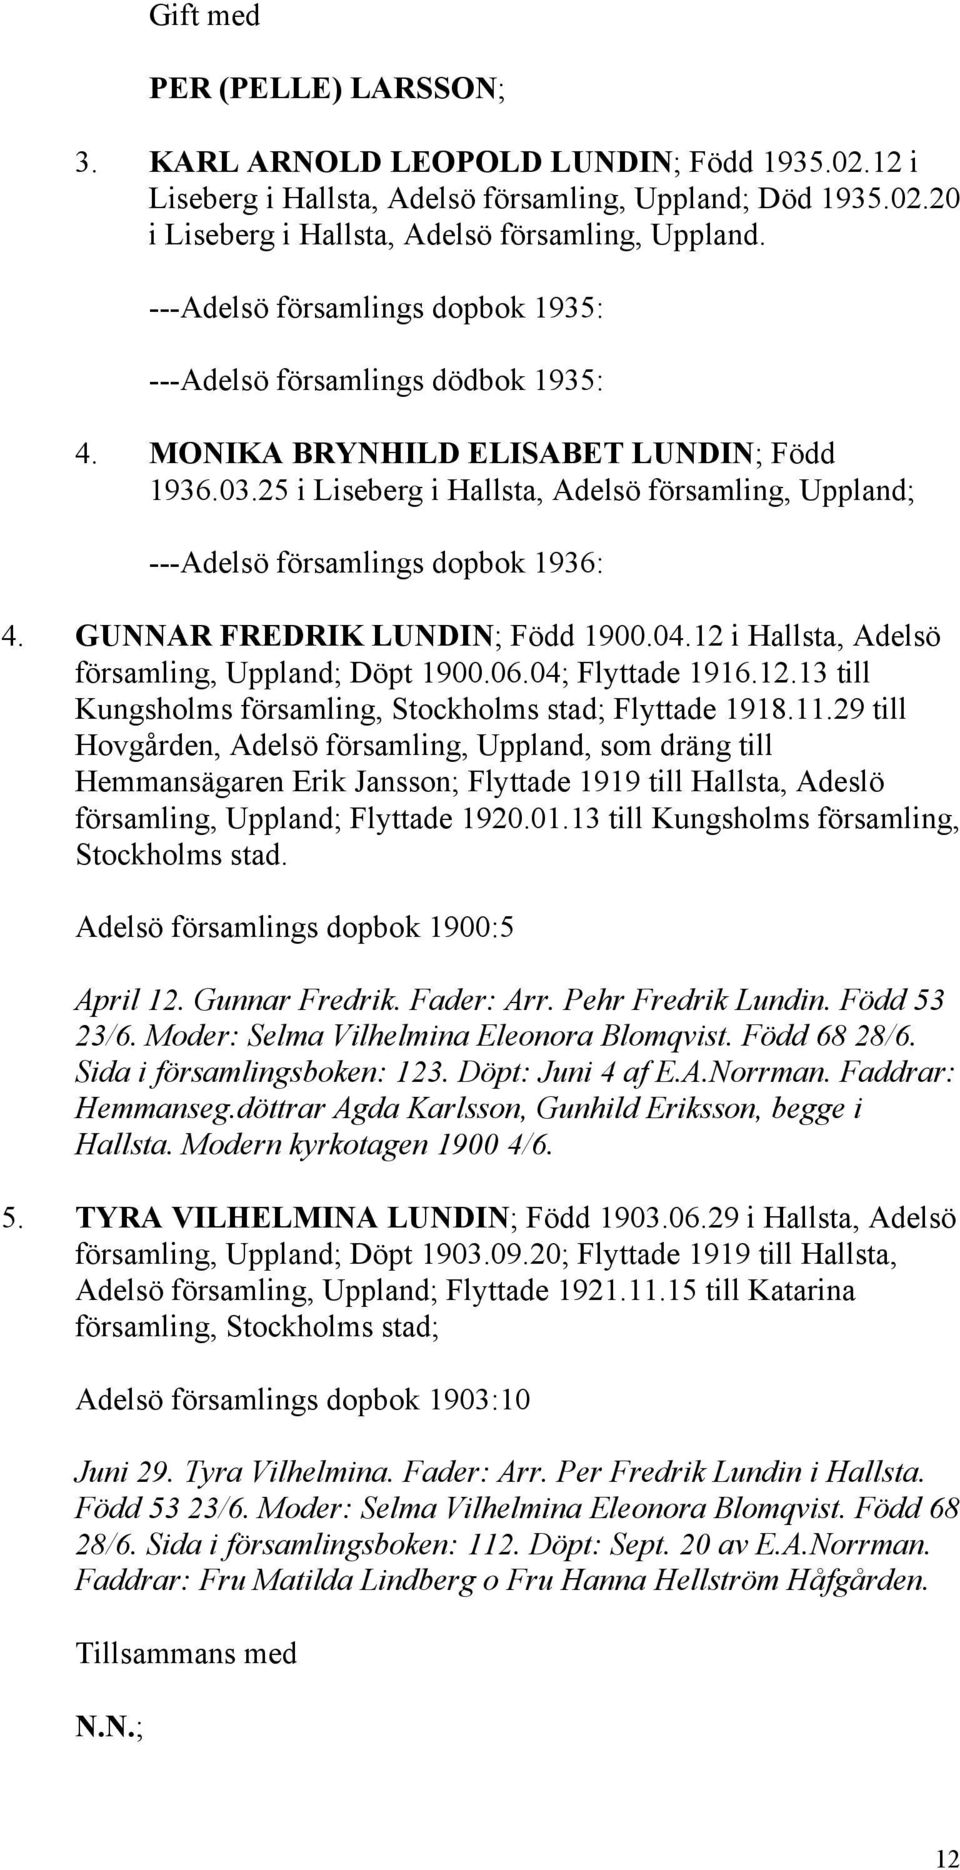 25 i Liseberg i Hallsta, Adelsö församling, Uppland; ---Adelsö församlings dopbok 1936: 4. GUNNAR FREDRIK LUNDIN; Född 1900.04.12 i Hallsta, Adelsö församling, Uppland; Döpt 1900.06.04; Flyttade 1916.